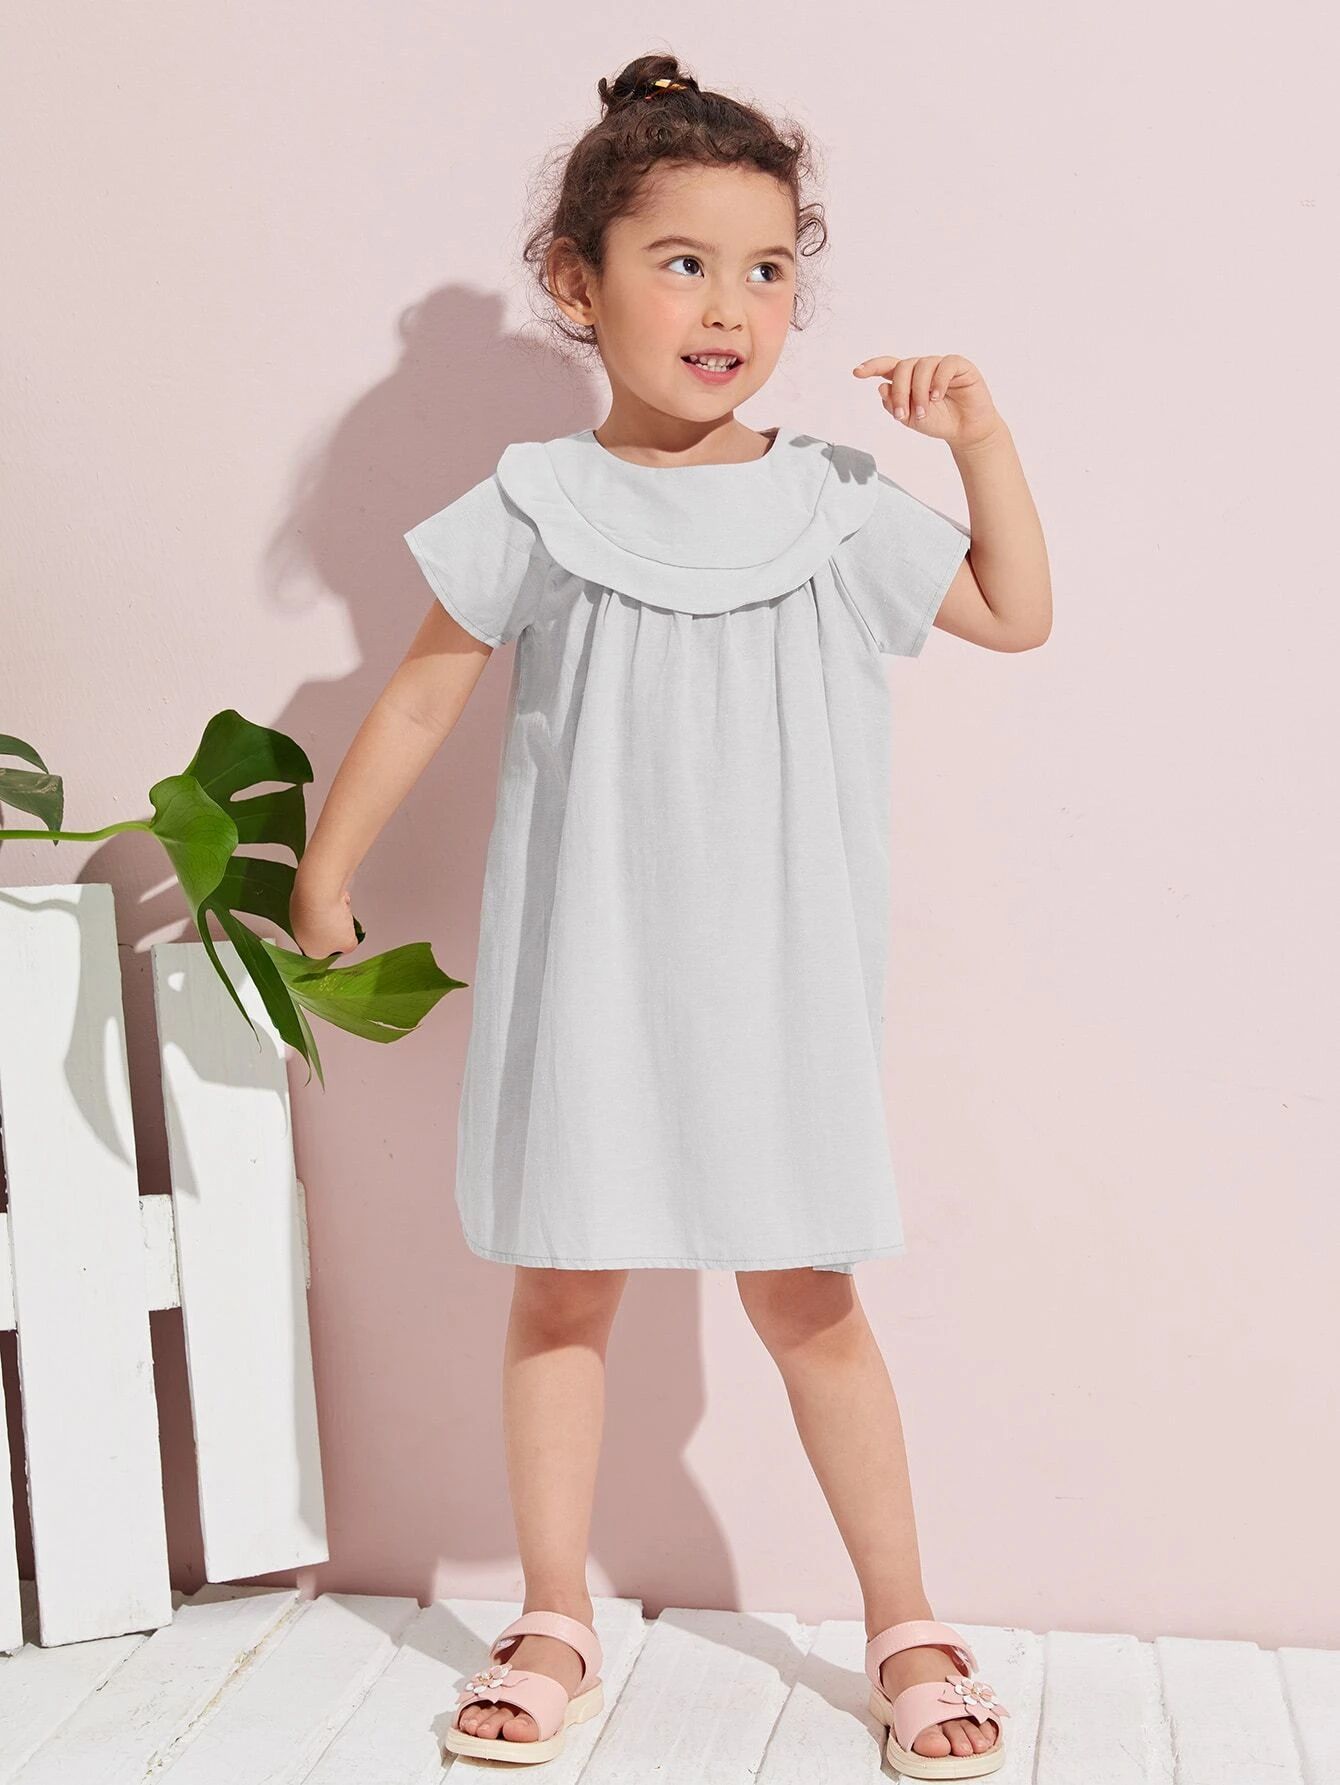 SHEIN Toddler Girls Ruffle Trim Solid Dress | SHEIN